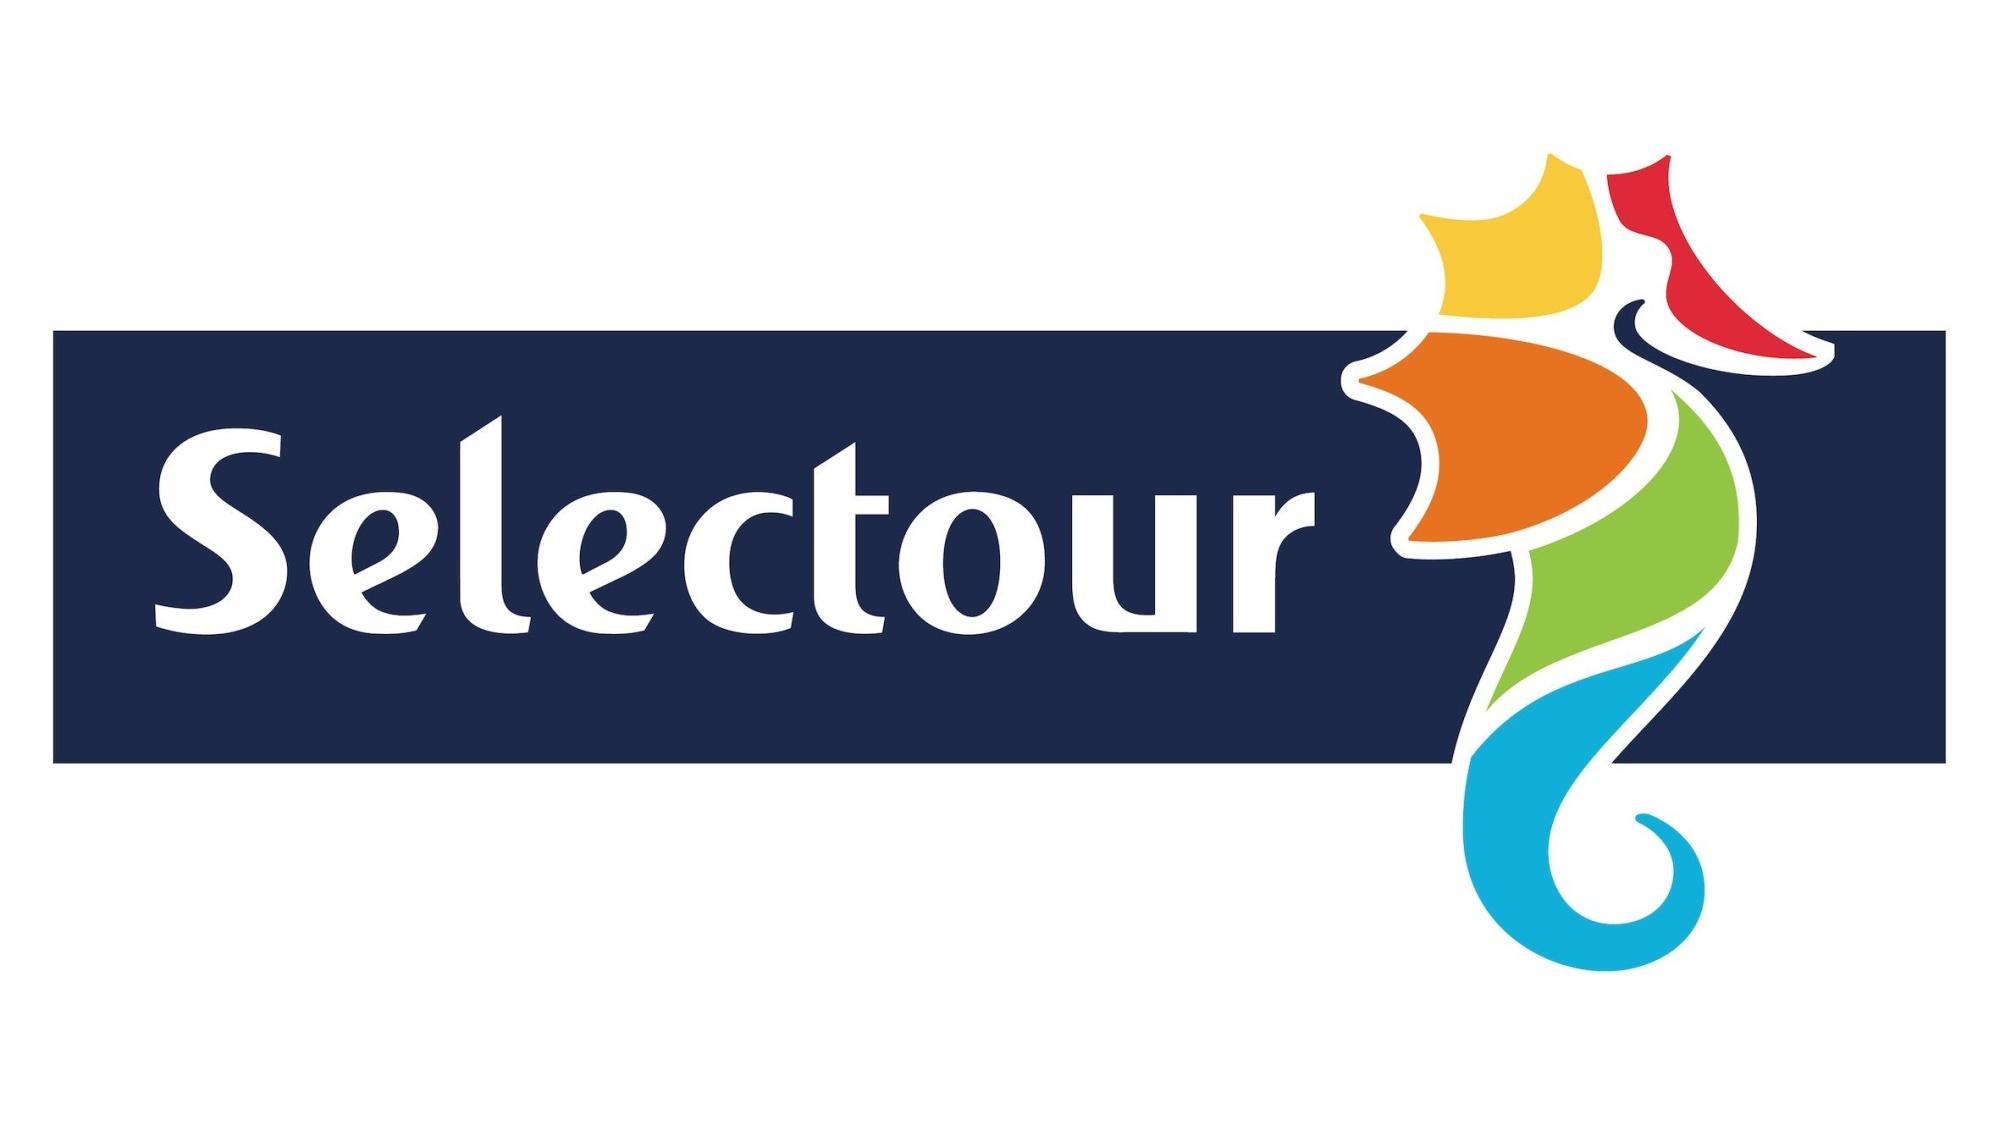 Selectour - Récréatour Valence